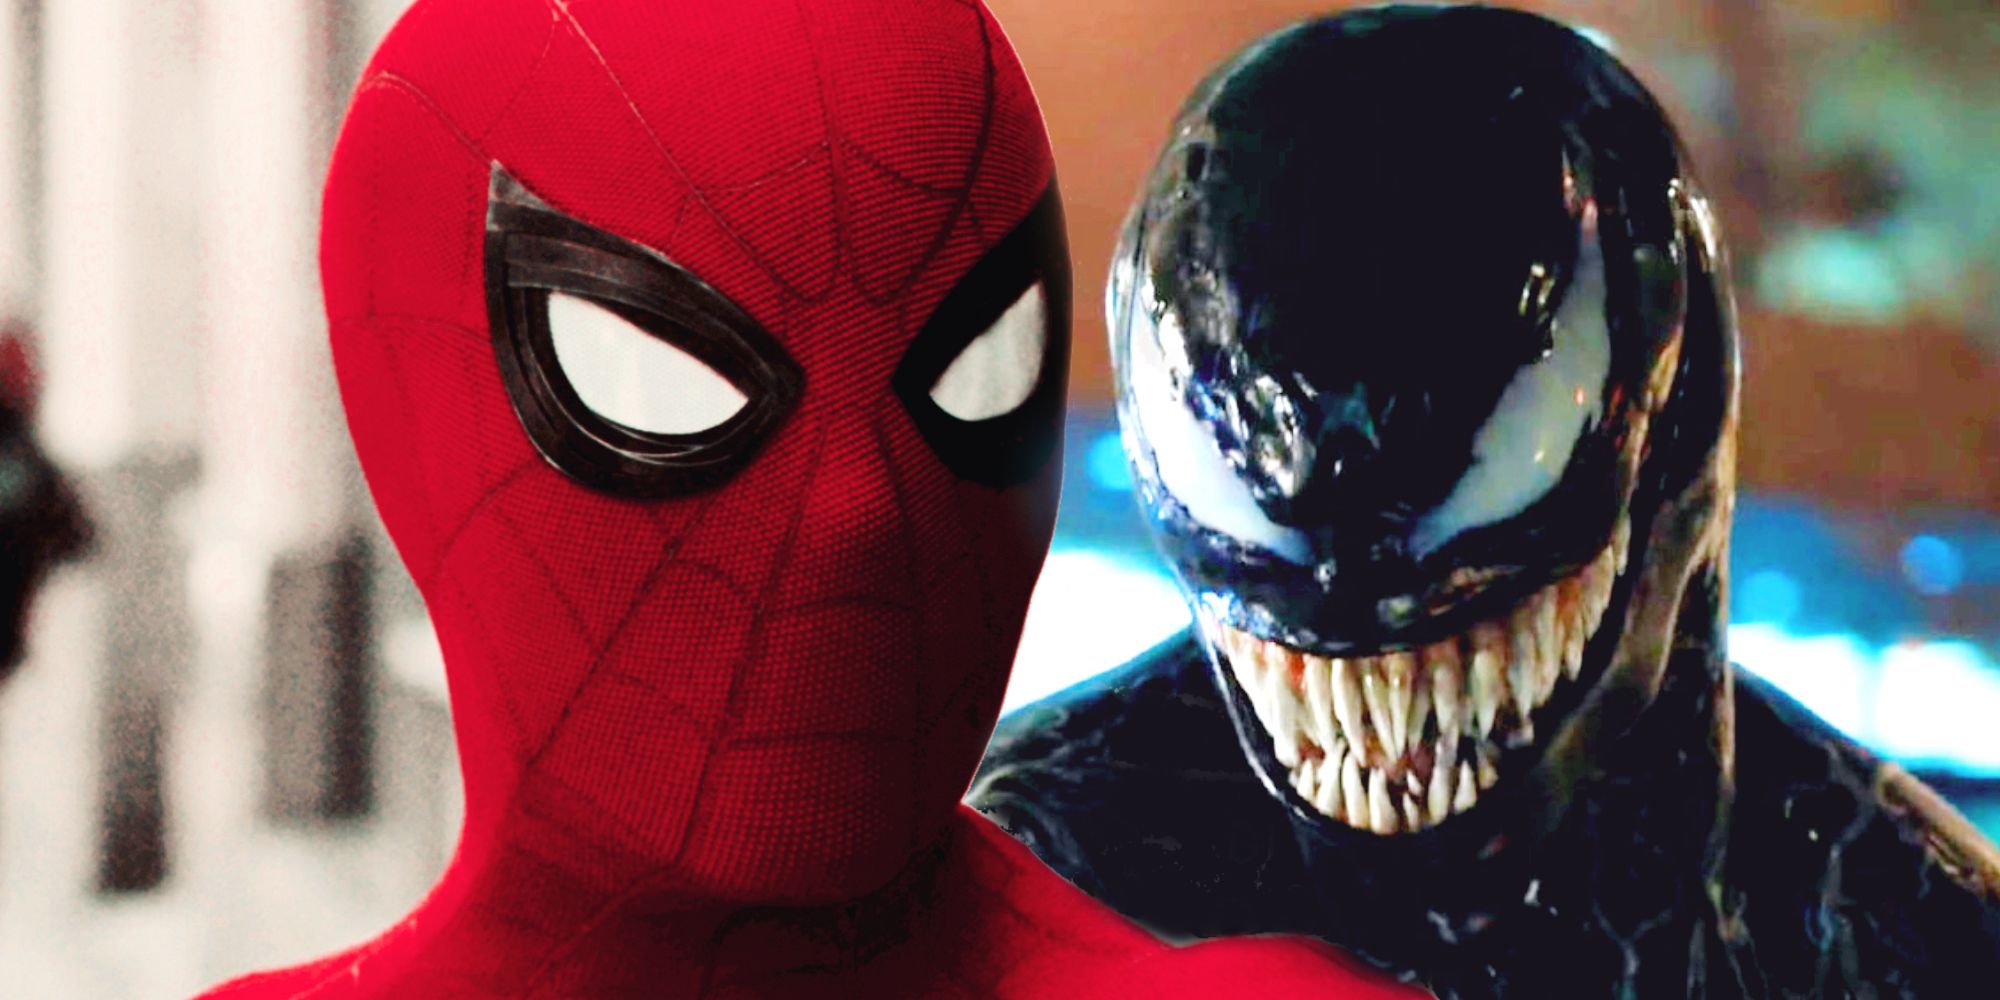 Venom/Spider-Man Crossover -elokuva kaipaisi valtavaa osaa heidän tarinastaan